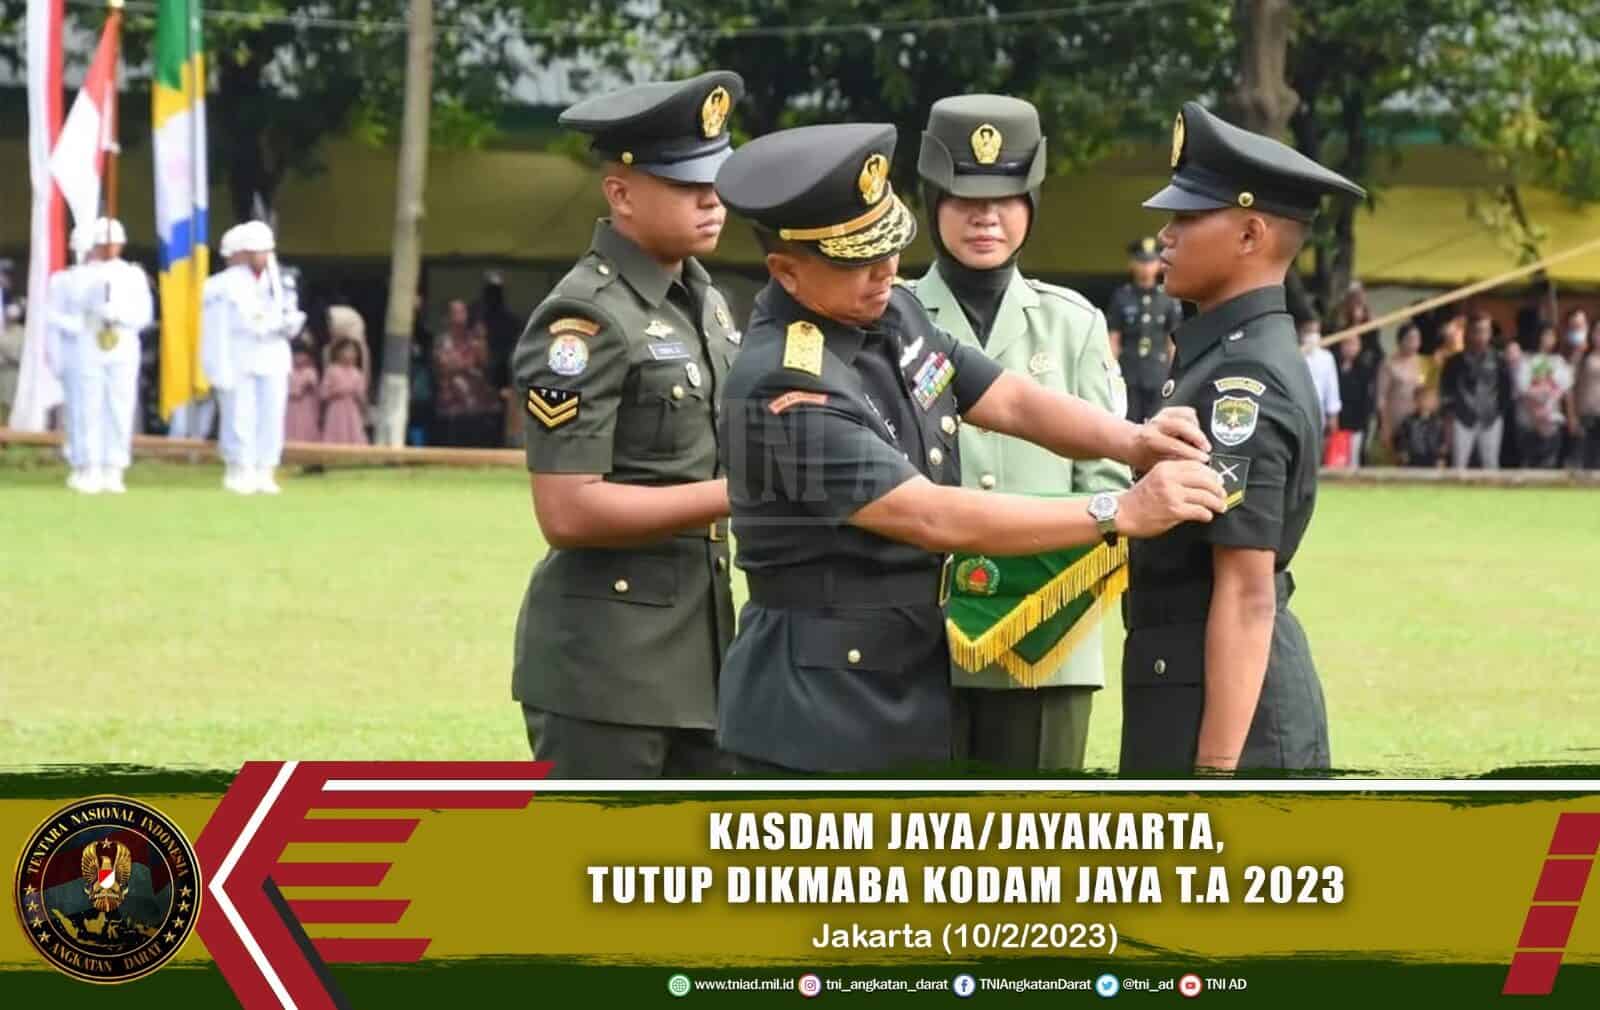 Kasdam Jaya/Jayakarta Tutup Pendidikan Bintara PK TNI AD Kodam Jaya TA 2022